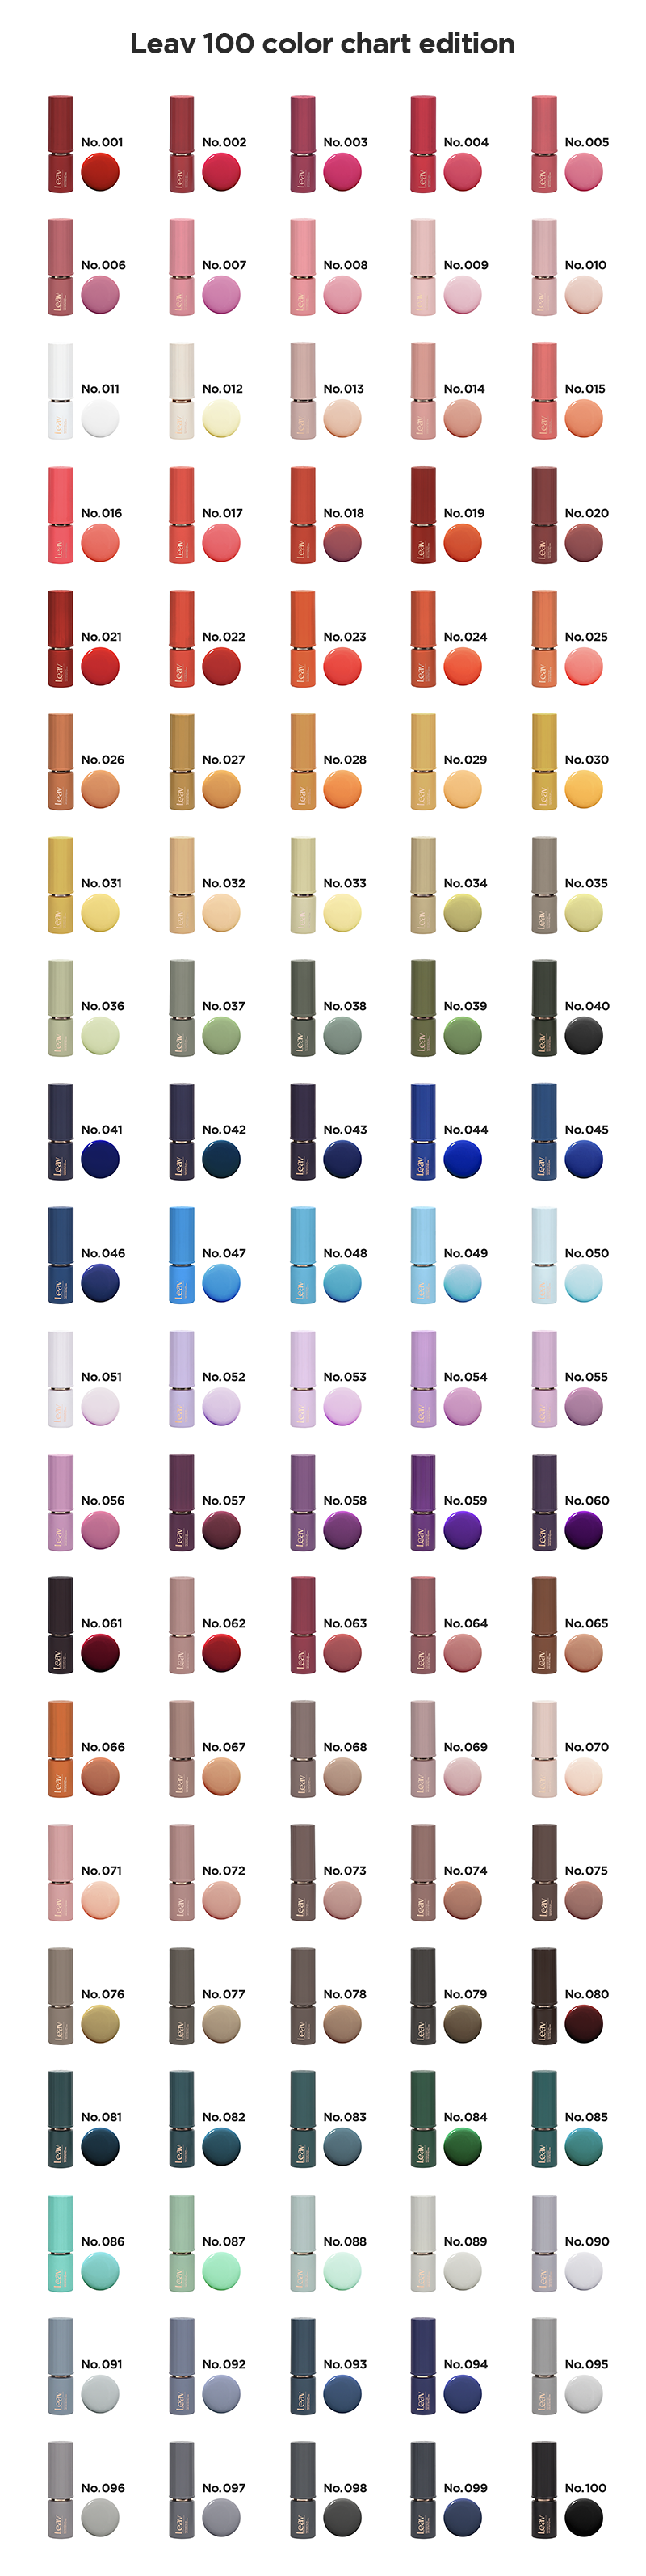 [PRE-ORDER] Leav Colour Collection 100pc + Chart Board